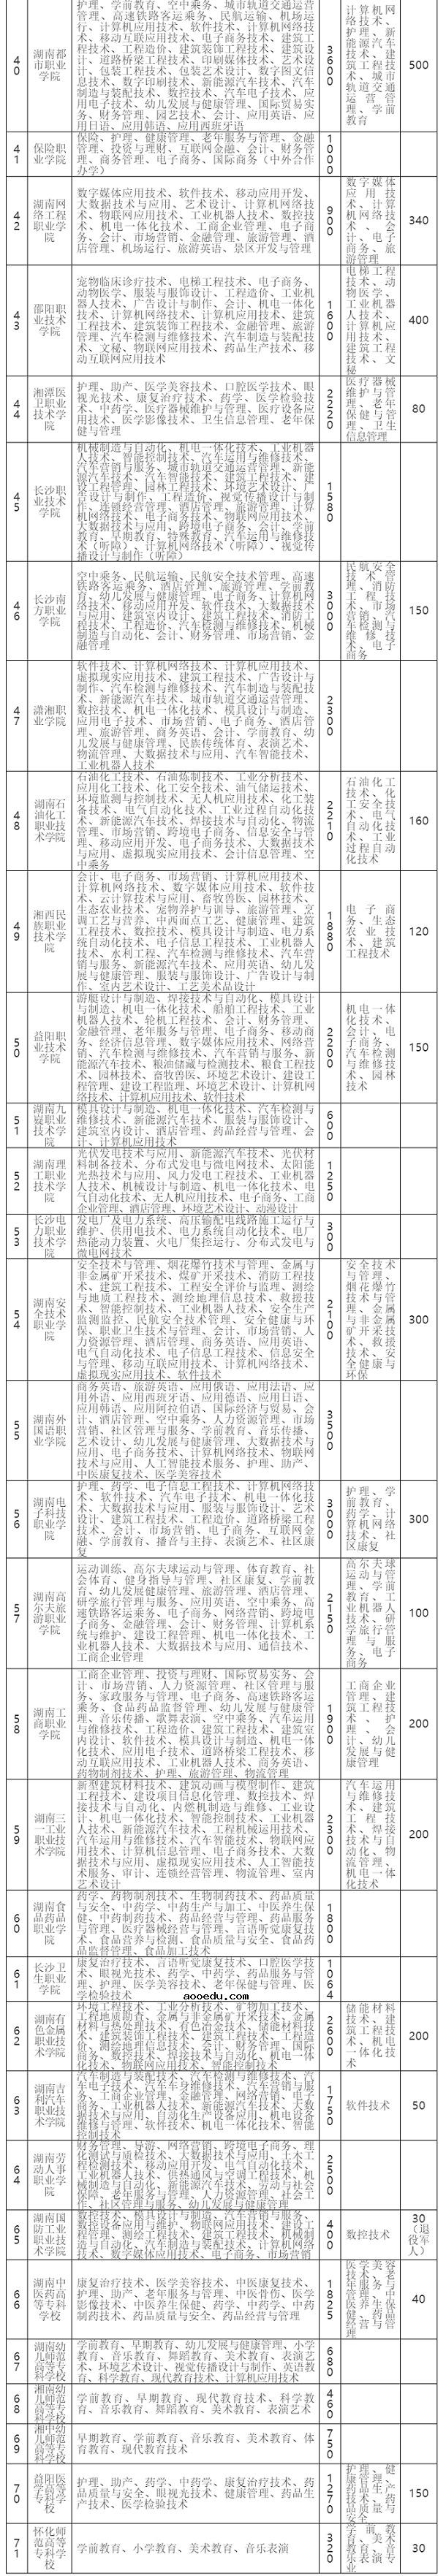 2020湖南高职单招院校名单71所【完整】